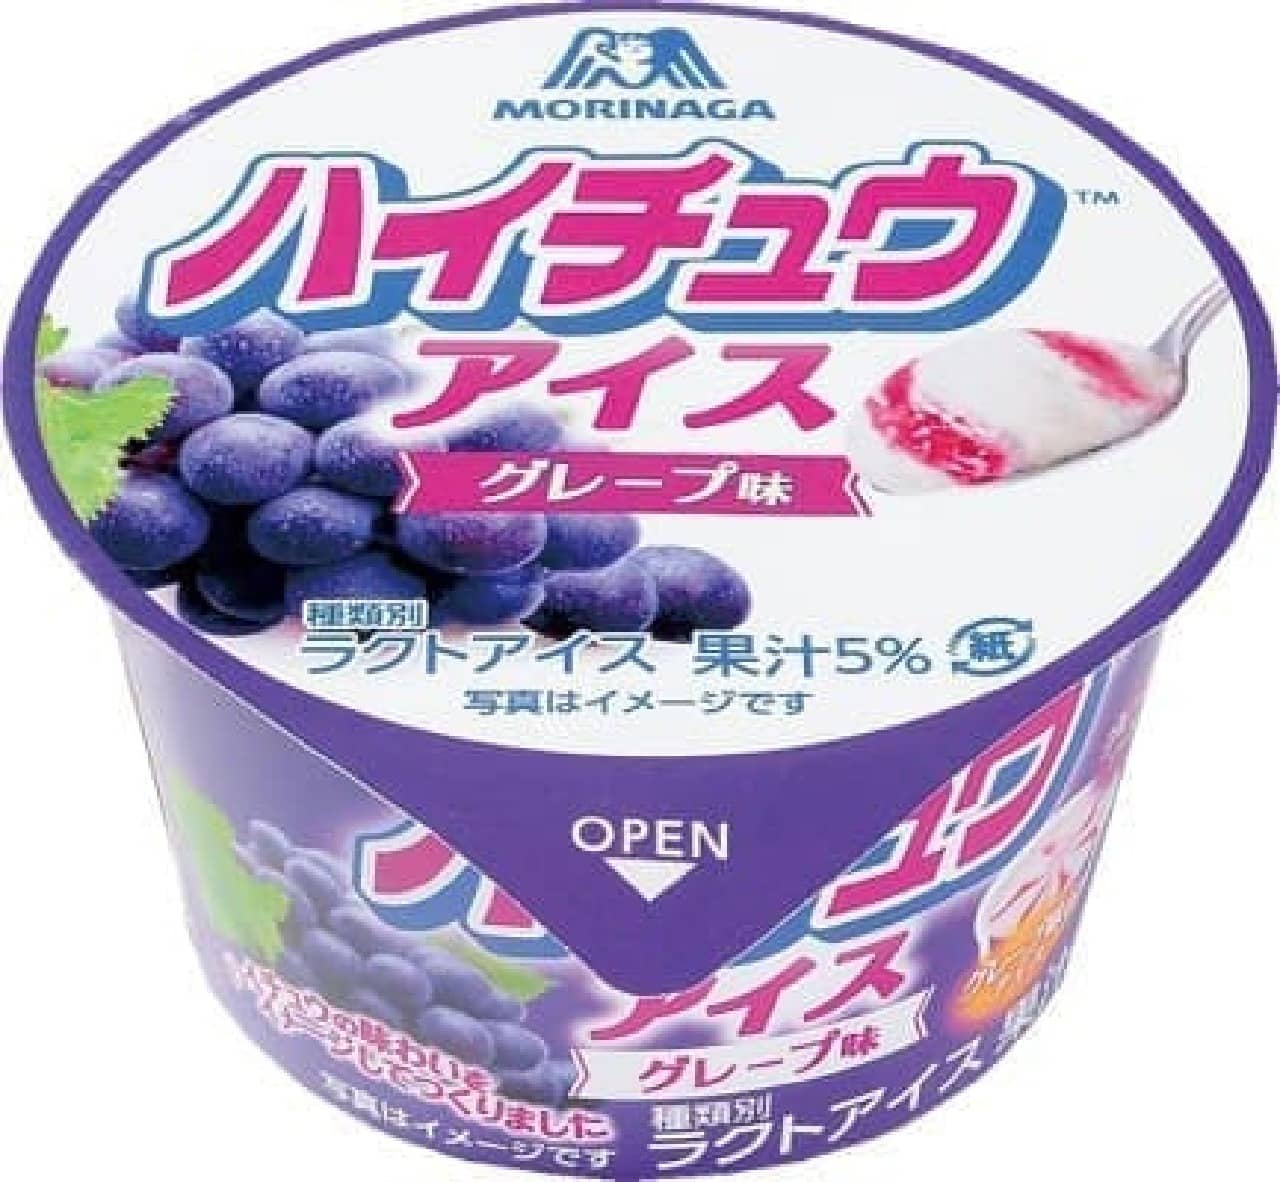 Lawson Limited "Hi-Chew Ice Grape Flavor"